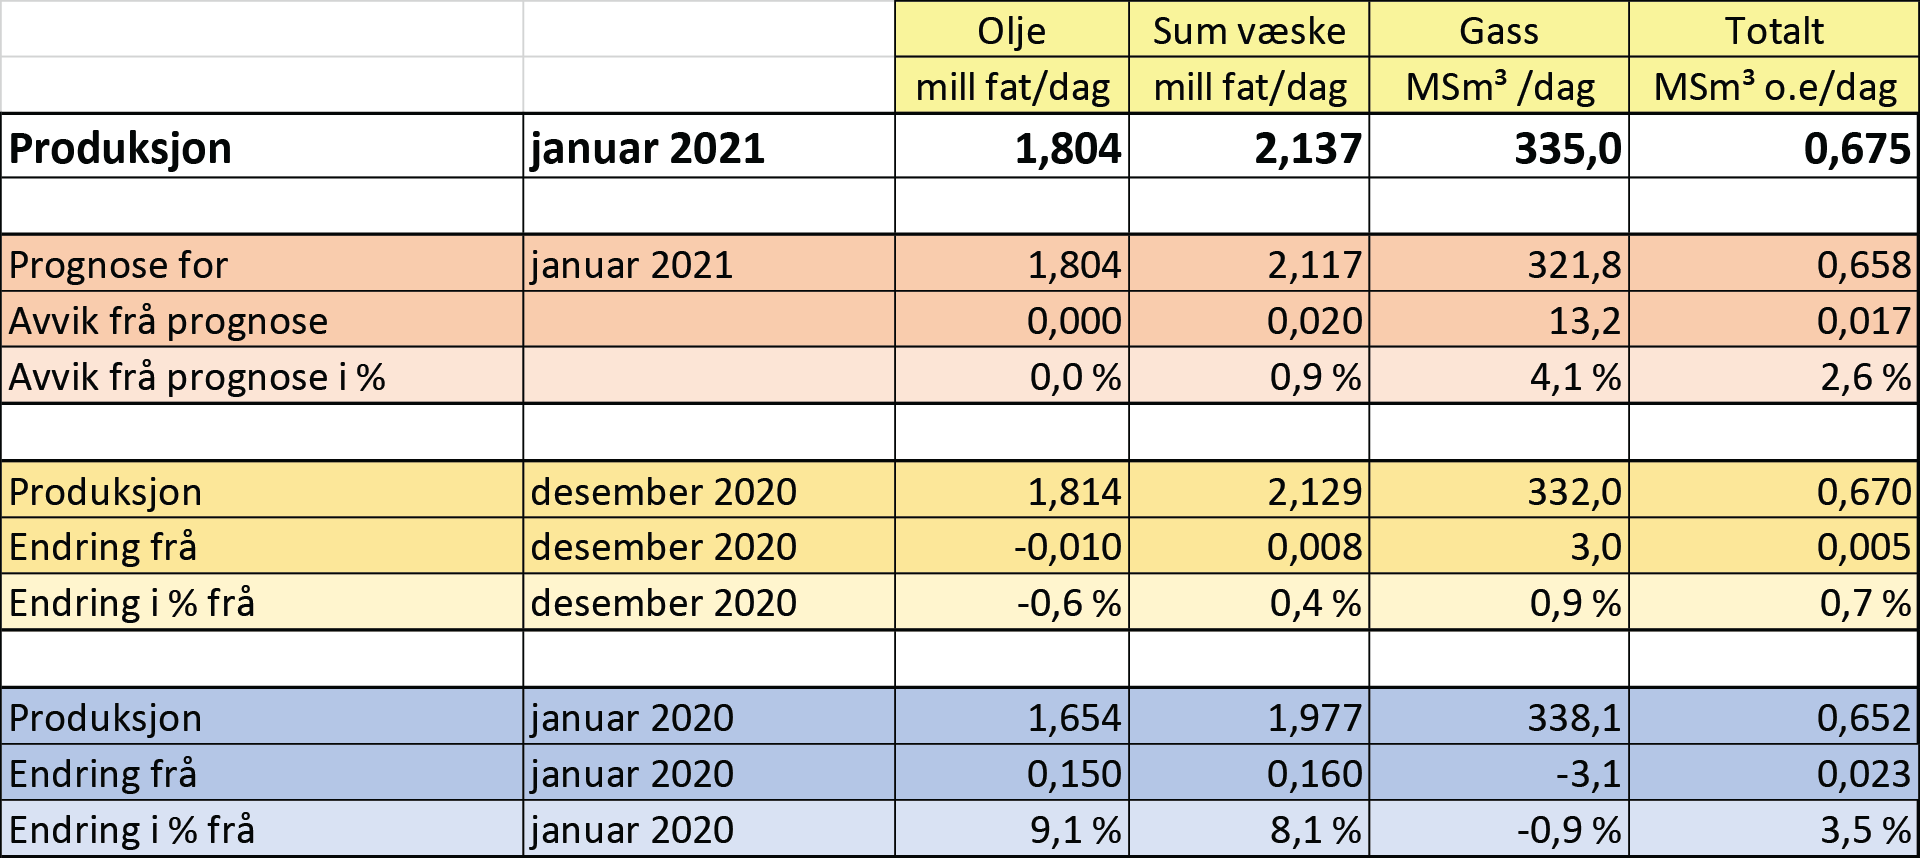 Tabell som viser olje- og gassproduksjon i januar 2021